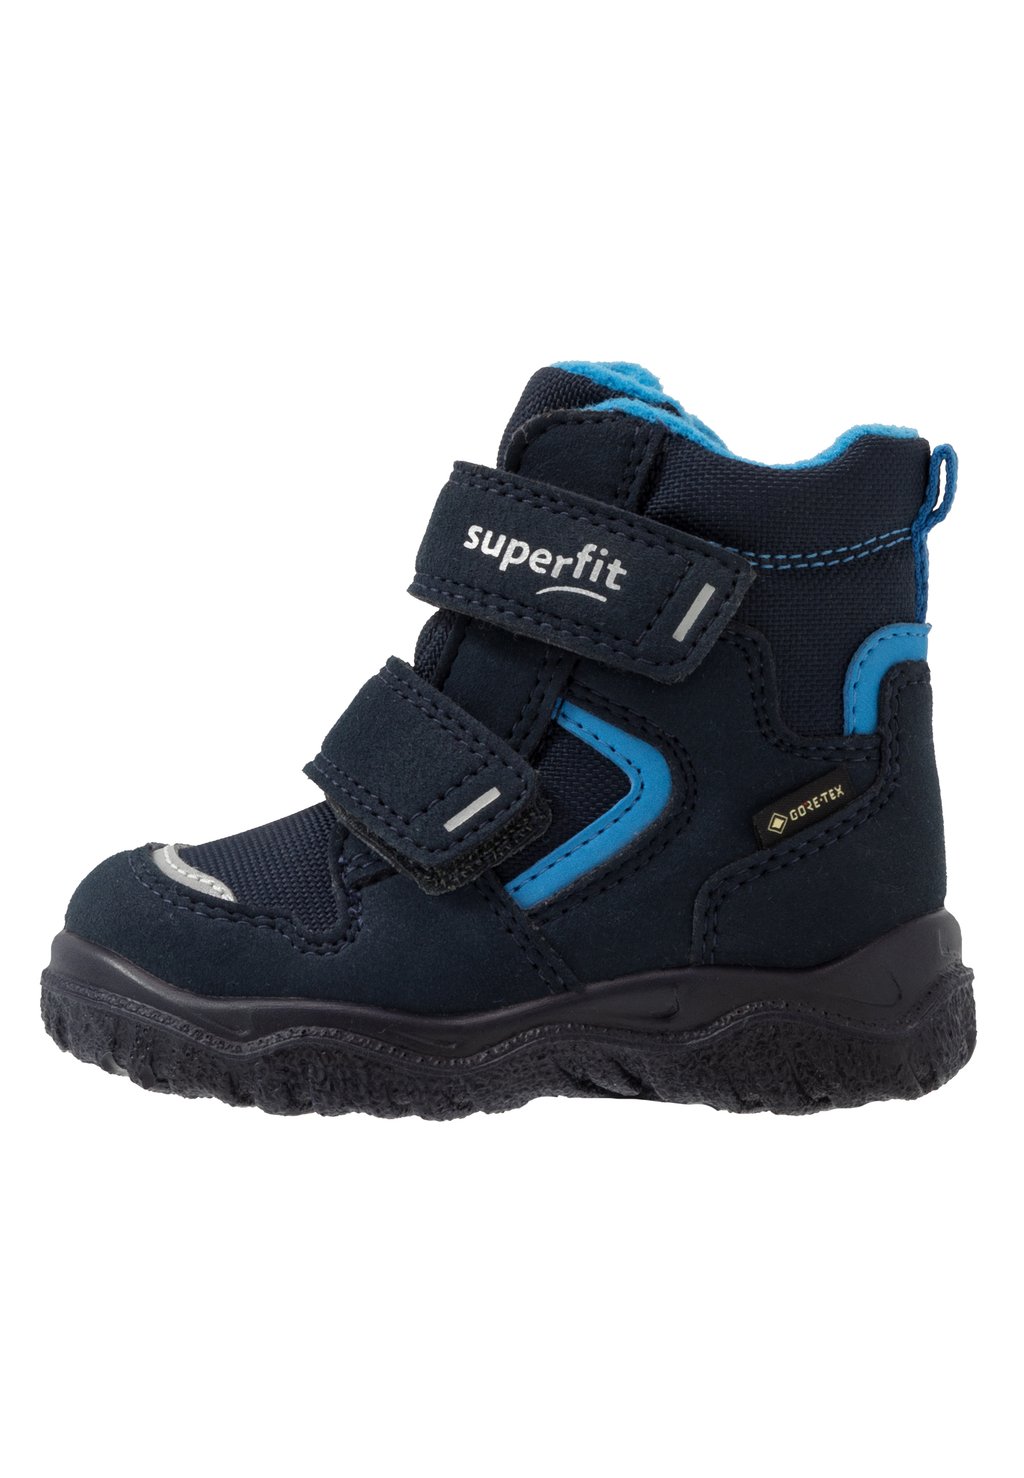 Зимние ботинки/зимние ботинки HUSKY Superfit, цвет blau зимние ботинки зимние ботинки husky superfit цвет blau